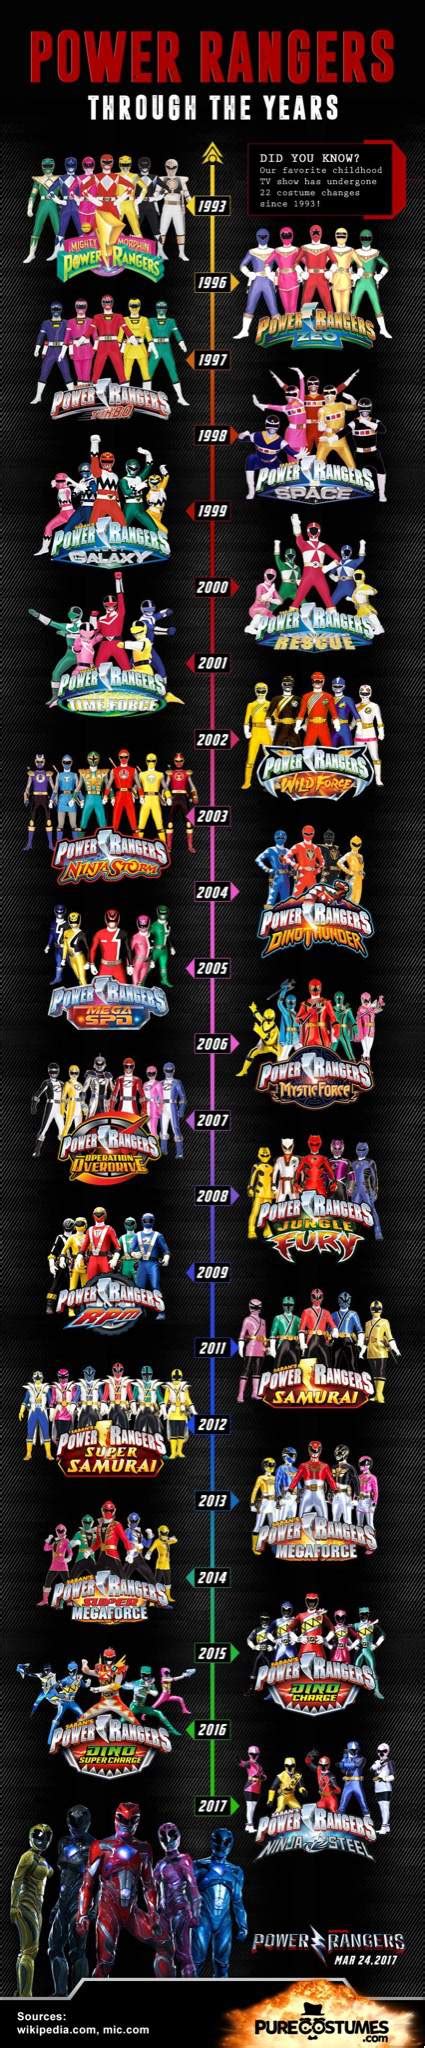 Power Rangers Timeline Power Rangers Samurai Amino